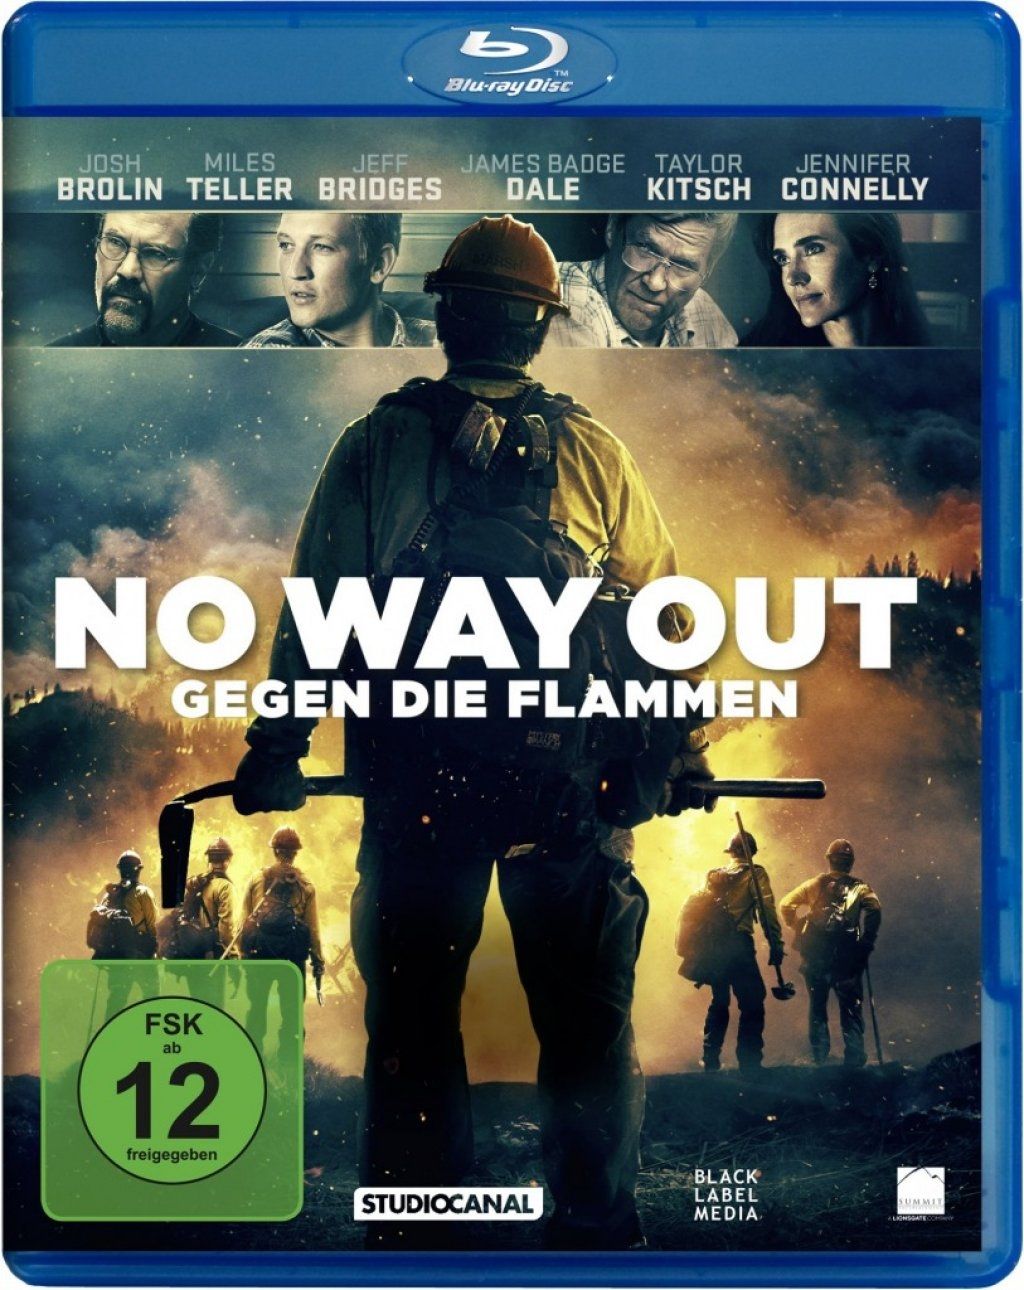 No Way Out - Gegen die Flammen (BLURAY)